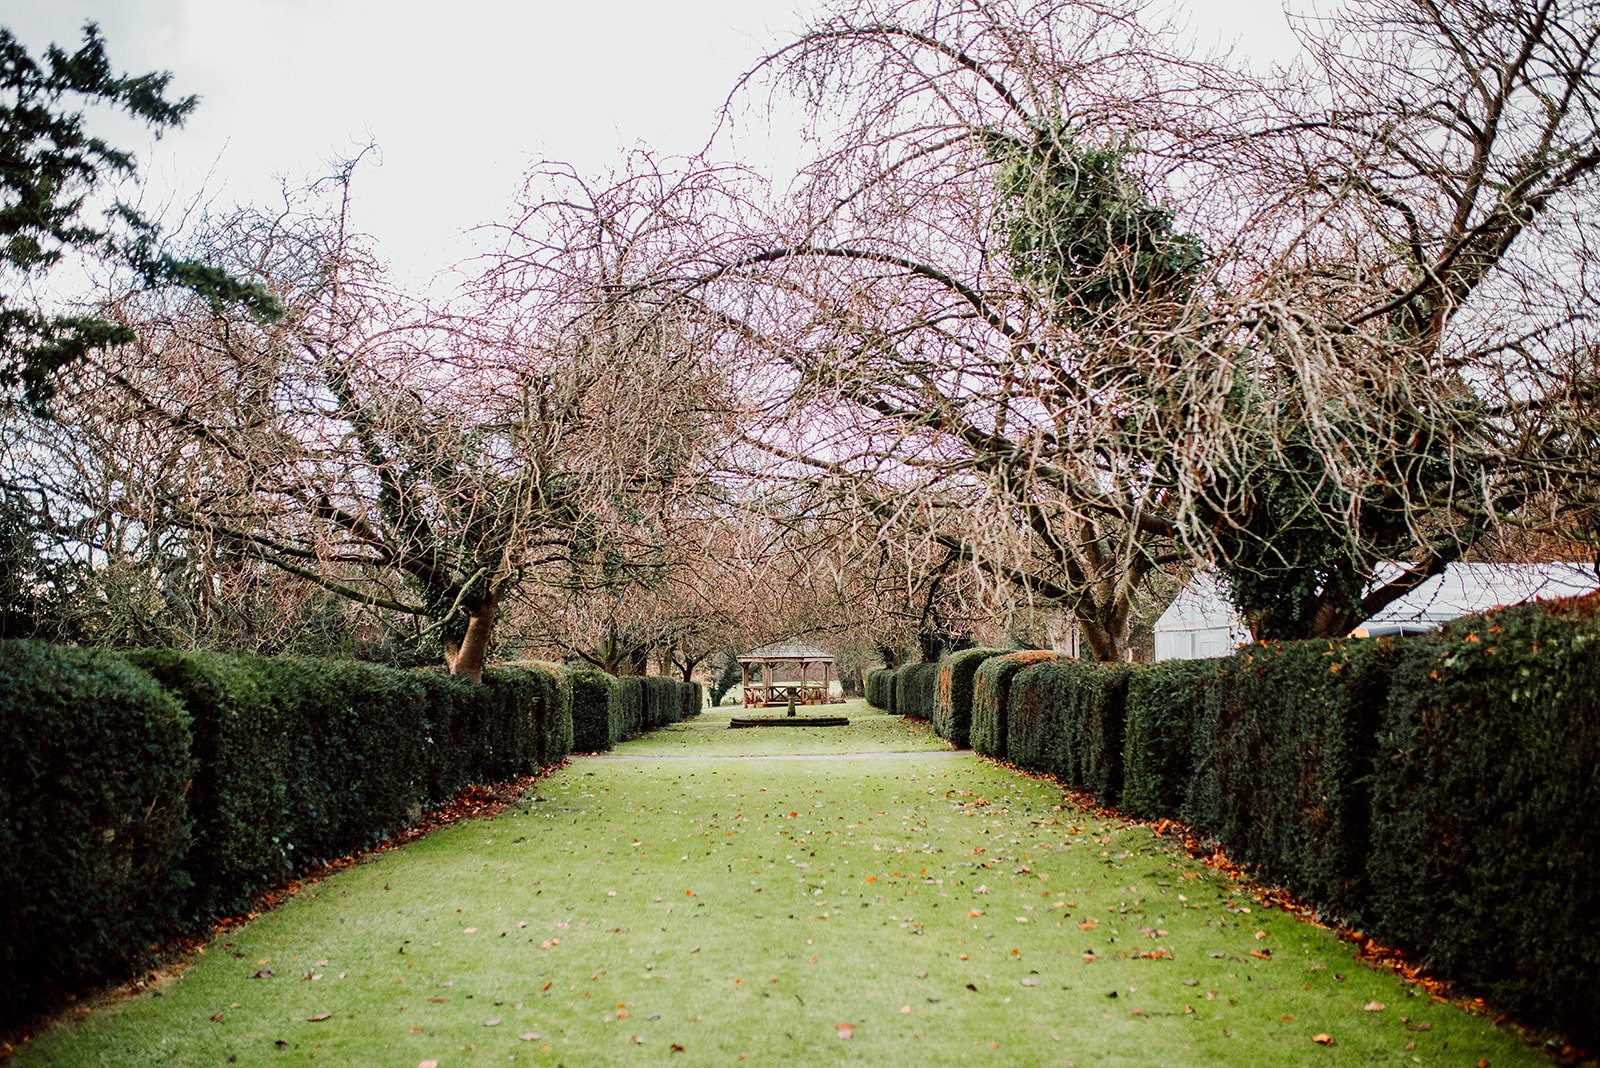 The gardens of Hazlewood castle